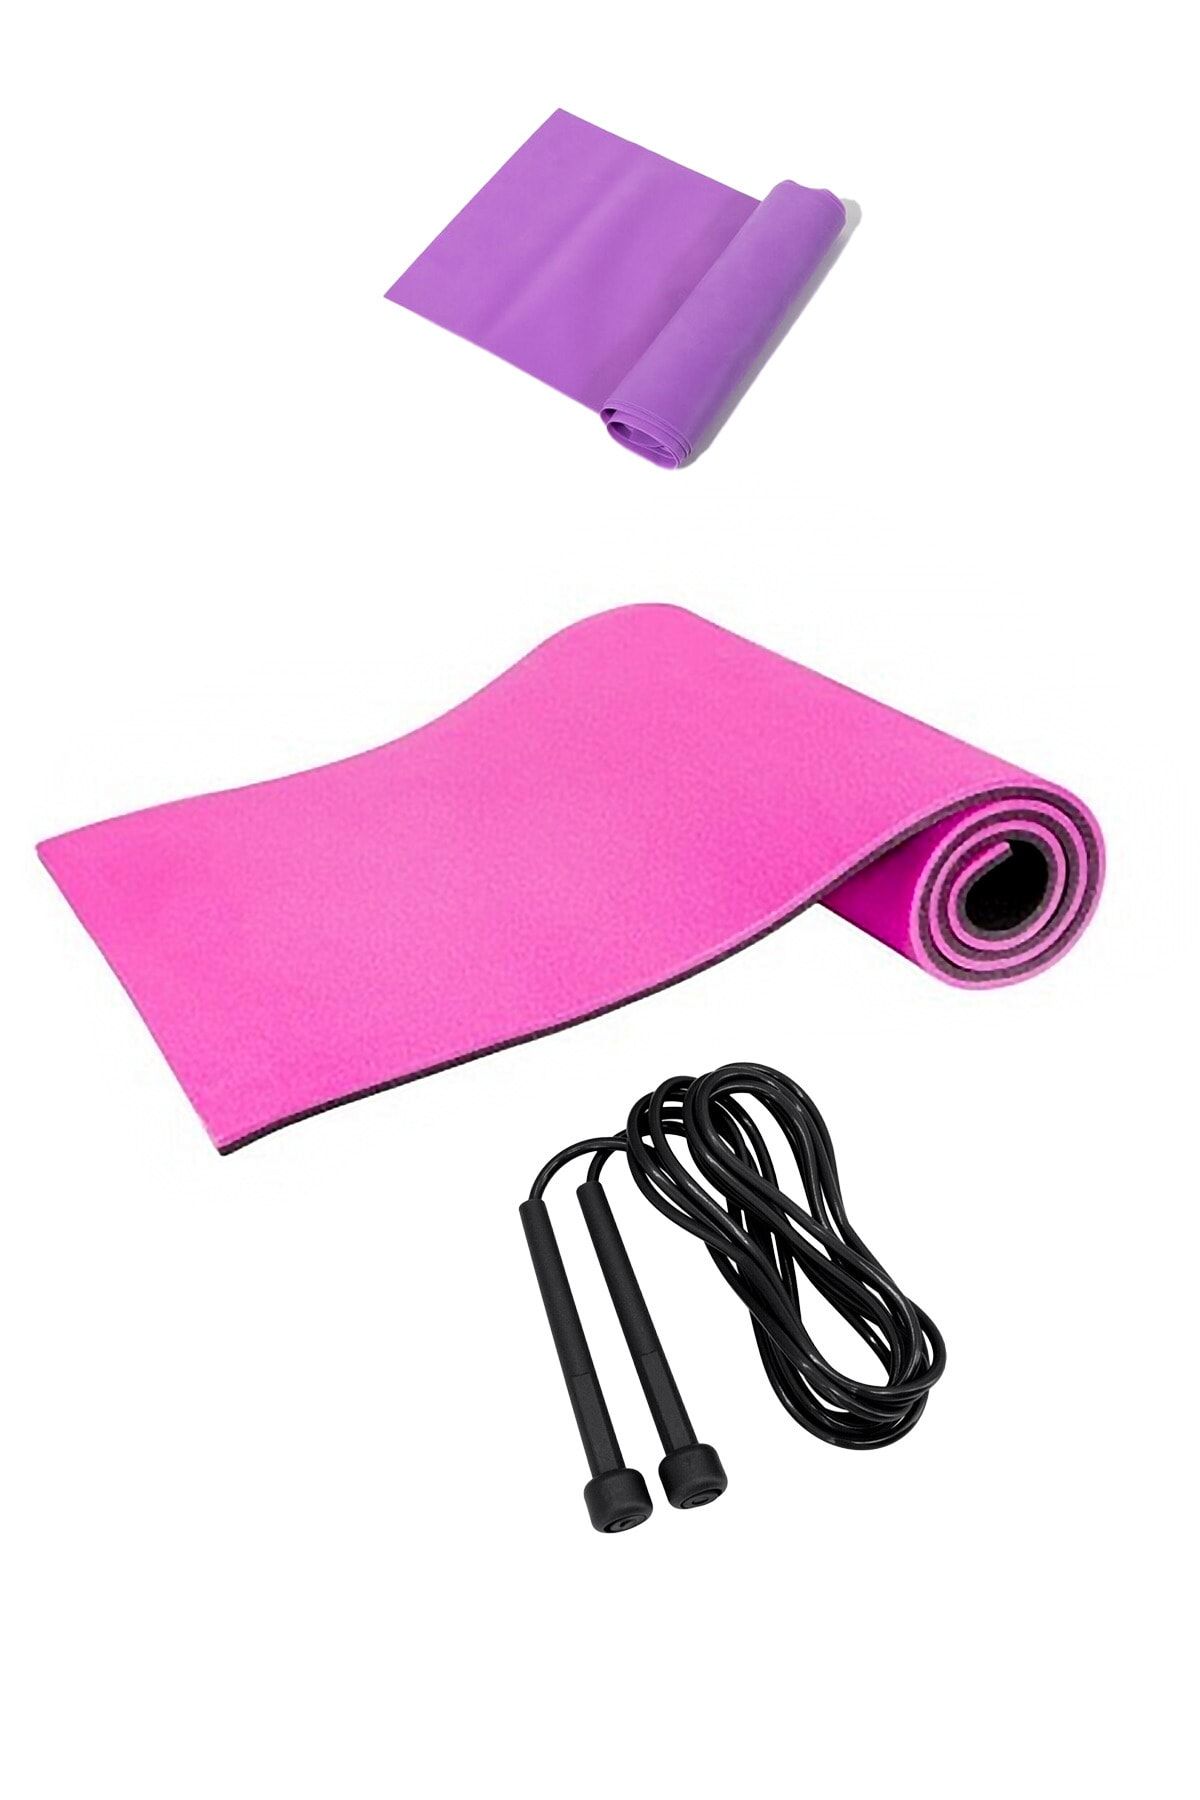 Tosima 8mm Pilates Matı Egzersiz Lastiği Ve Atlama Ipi Seti Yoga Matı Egzersiz Minderi